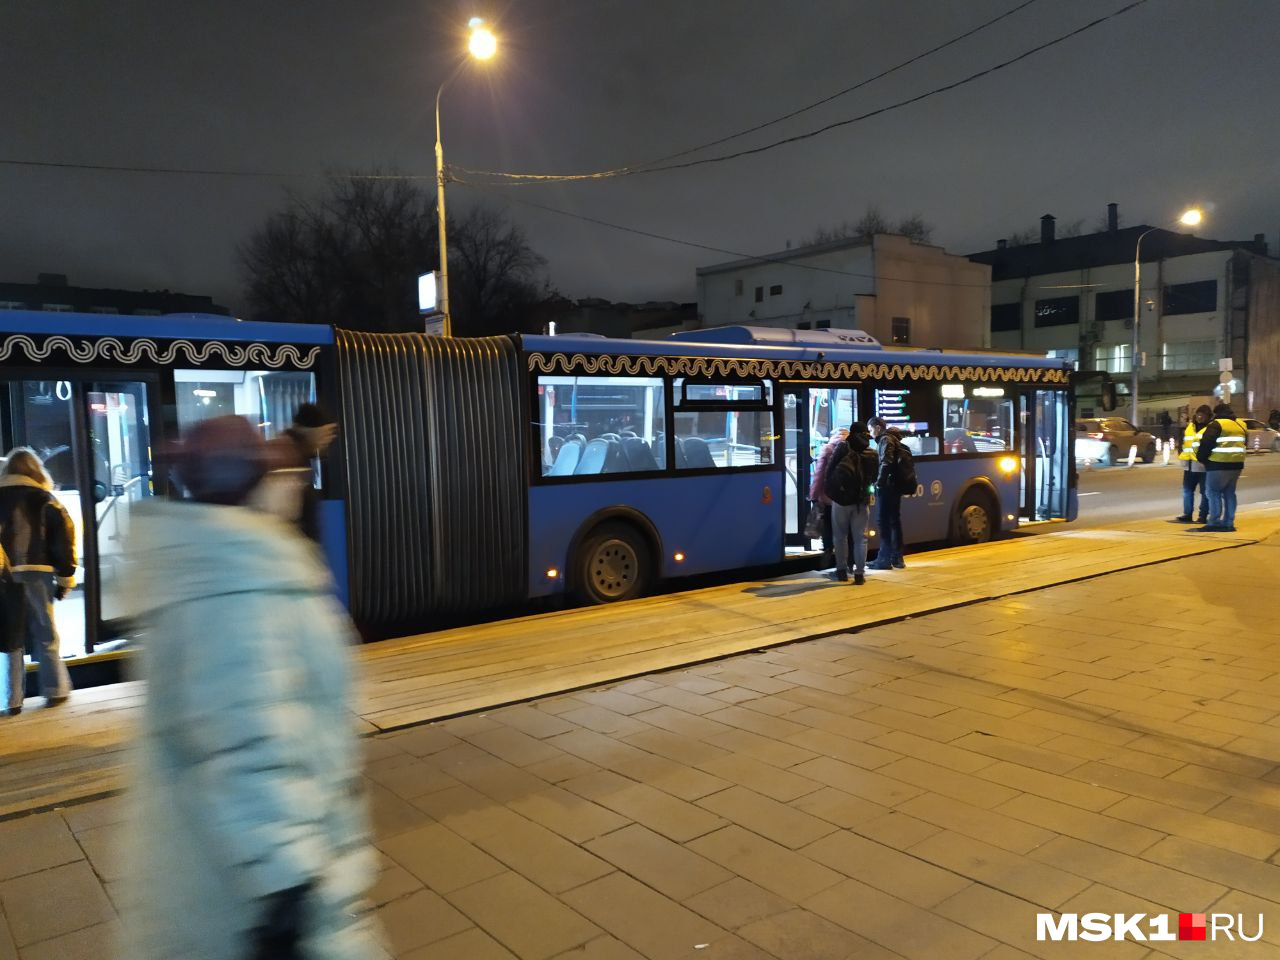 Когда три автобуса открыли двери, толпа быстро рассосалась, и в следующий автобус заходило мало людей